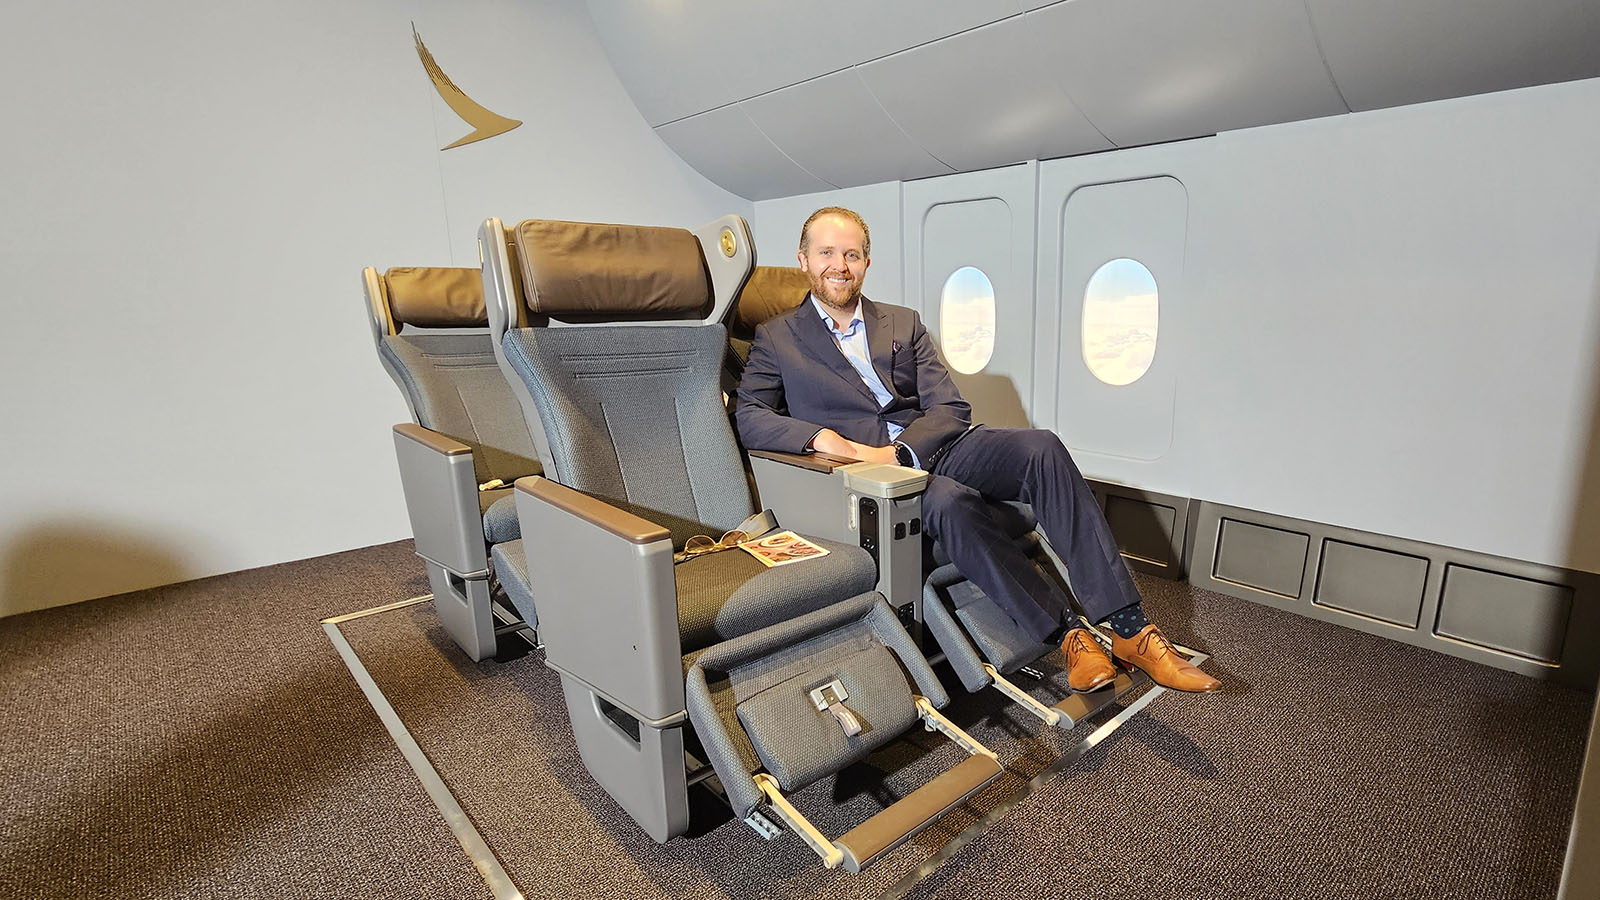 Passenger in Cathay Pacific's new Premium Economy